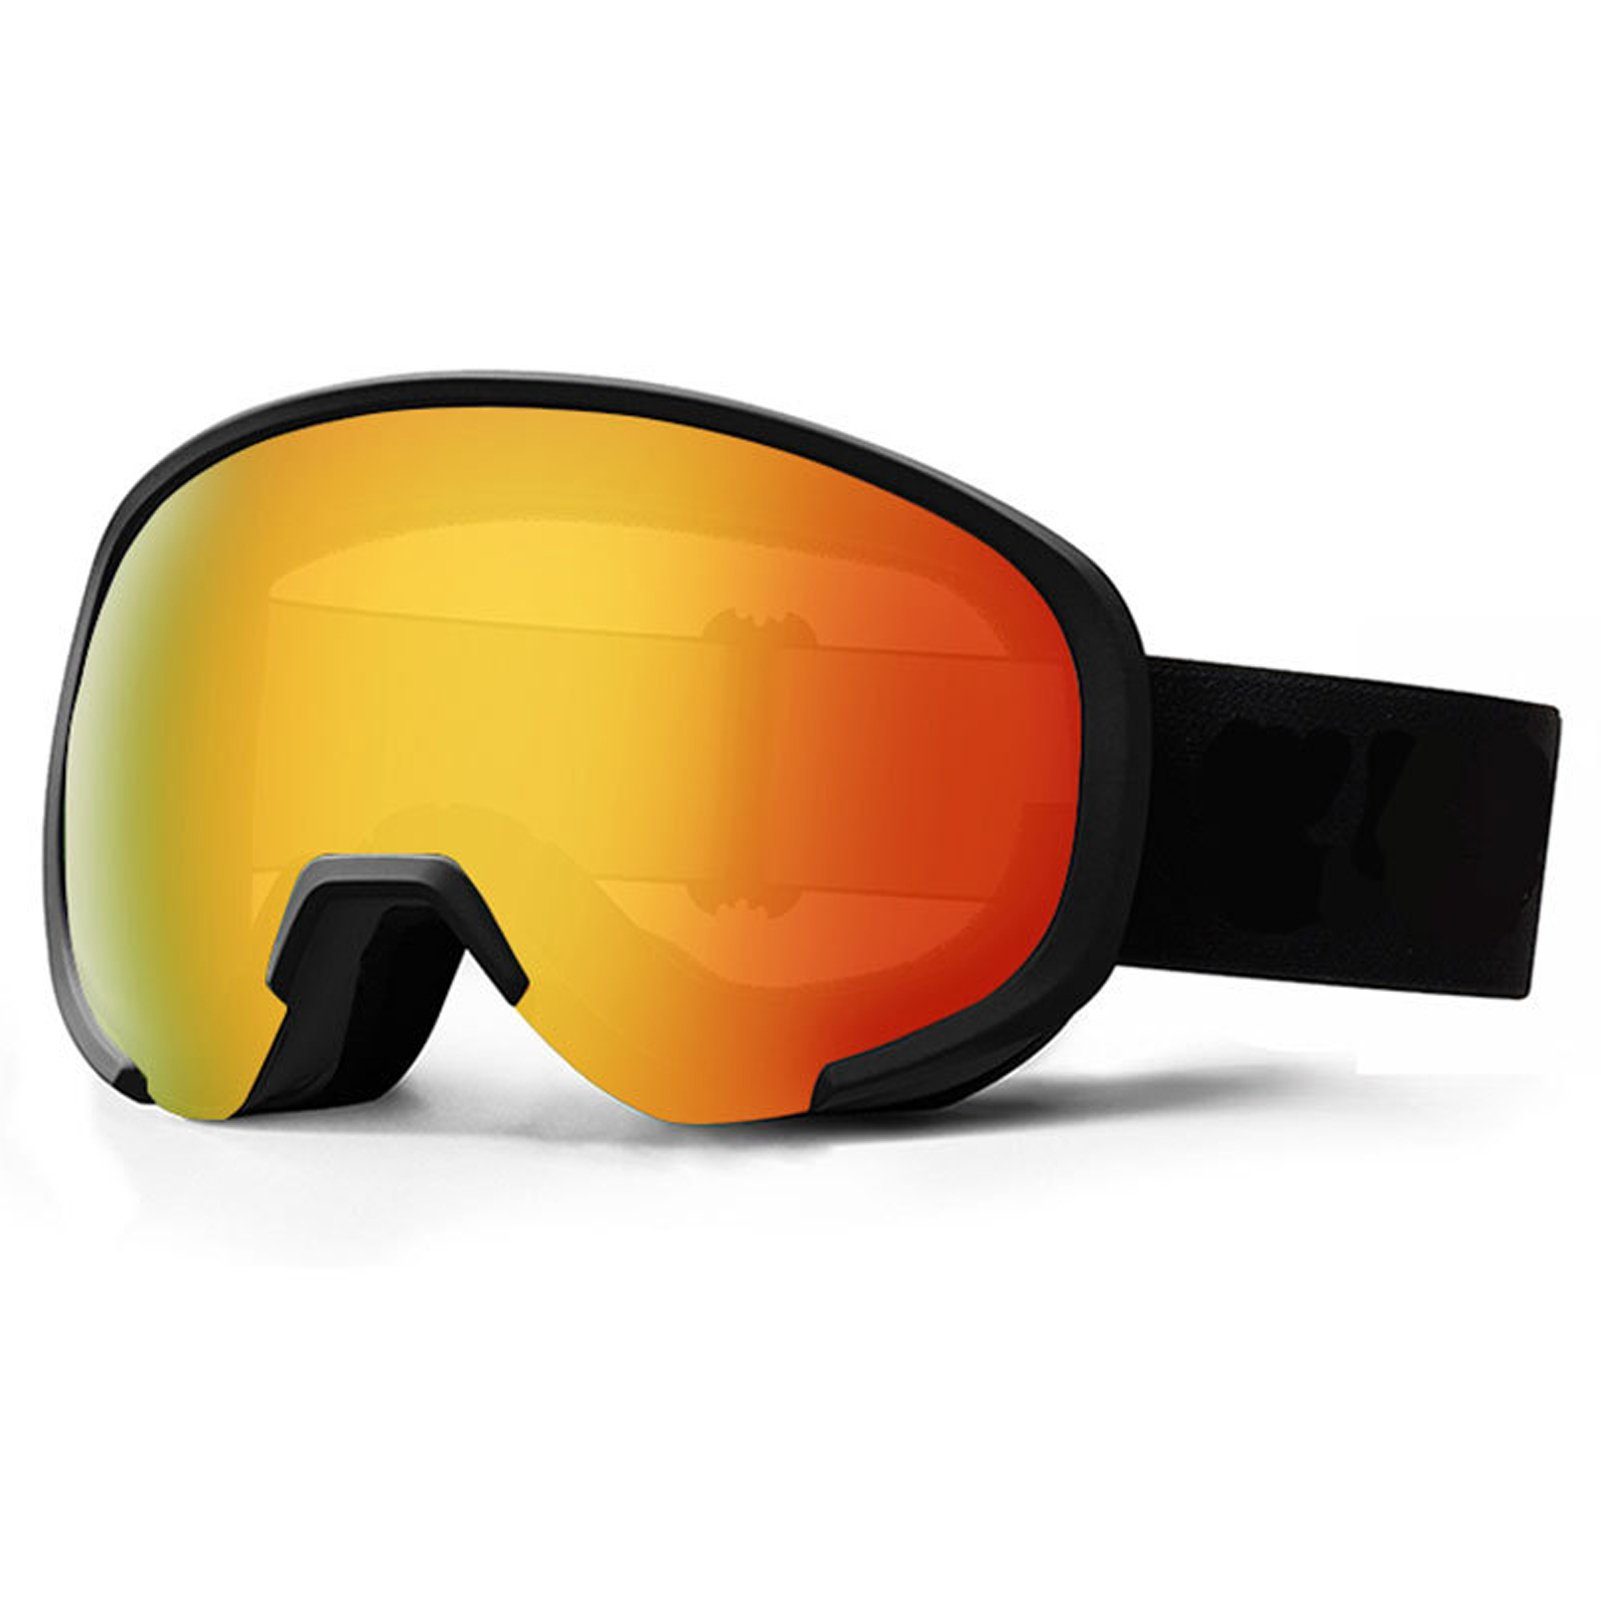 Blusmart Skibrille Ski-Snowboard-Brille Mit Breiter Sicht, Rutschfeste 2